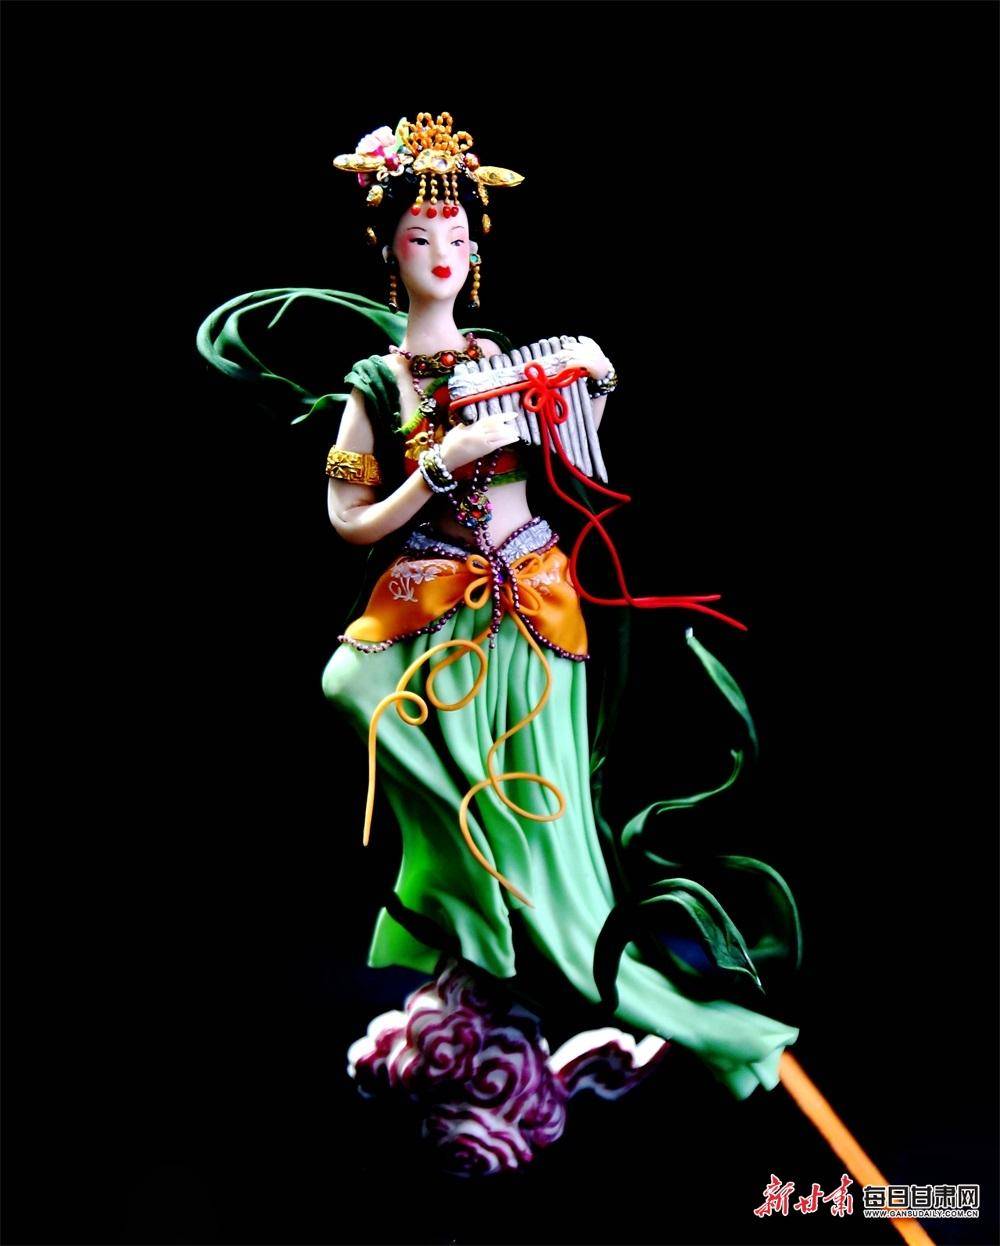 面塑,俗称花馍,面人等,是中国传统民间艺术